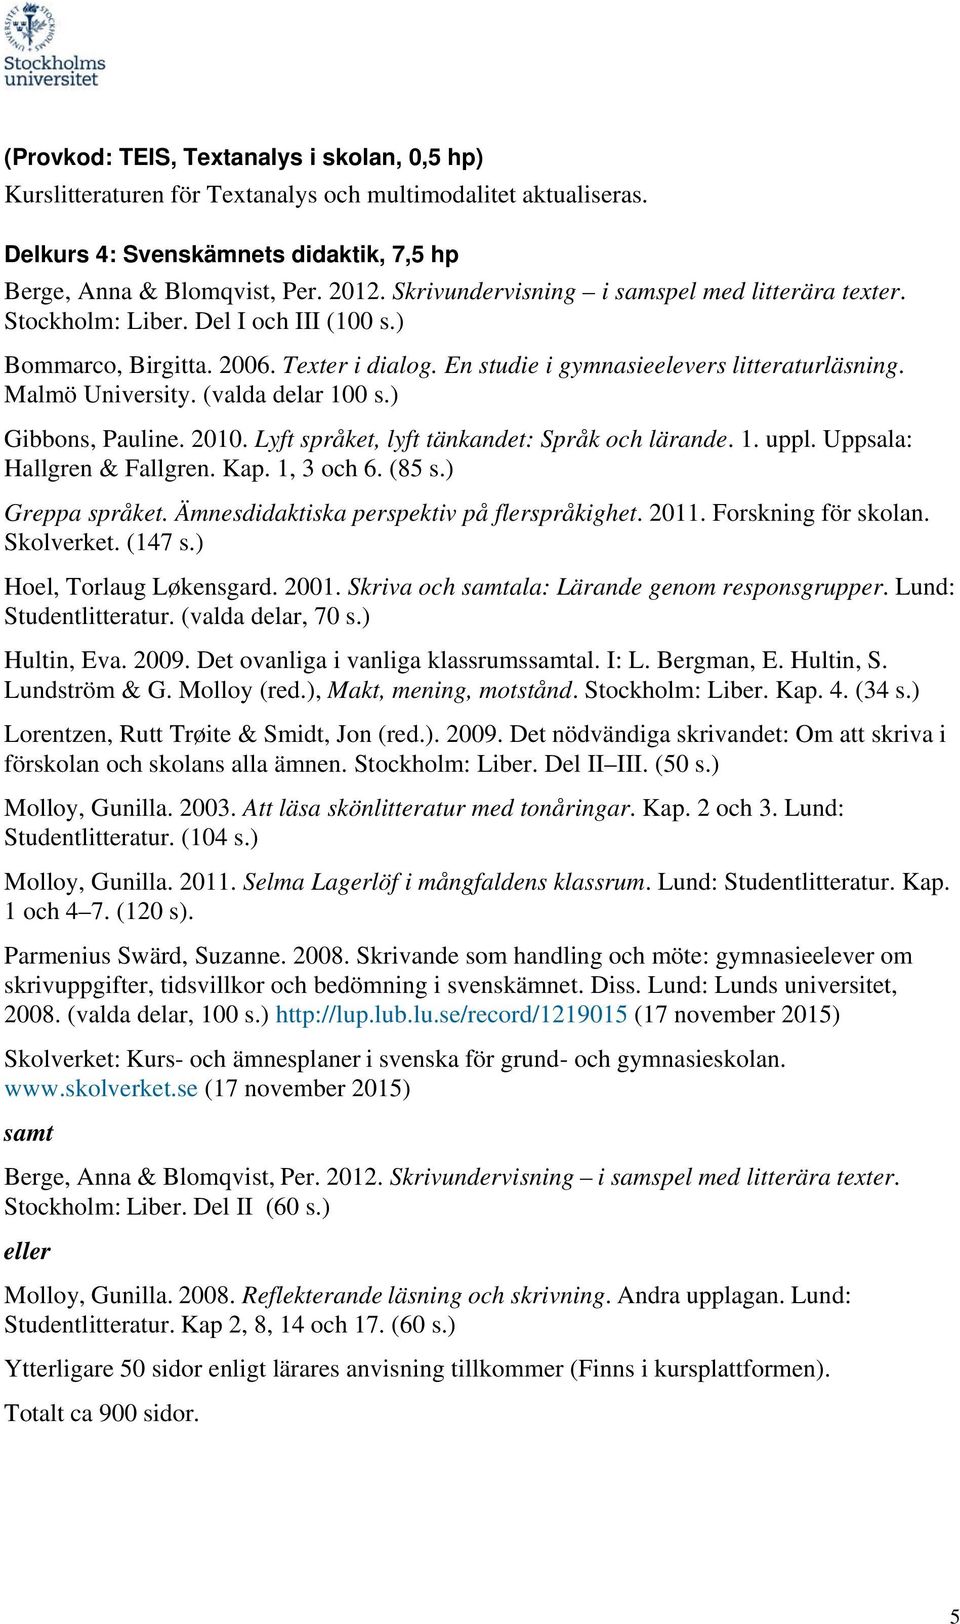 (valda delar 100 s.) Gibbons, Pauline. 2010. Lyft språket, lyft tänkandet: Språk och lärande. 1. uppl. Uppsala: Hallgren & Fallgren. Kap. 1, 3 och 6. (85 s.) Greppa språket.